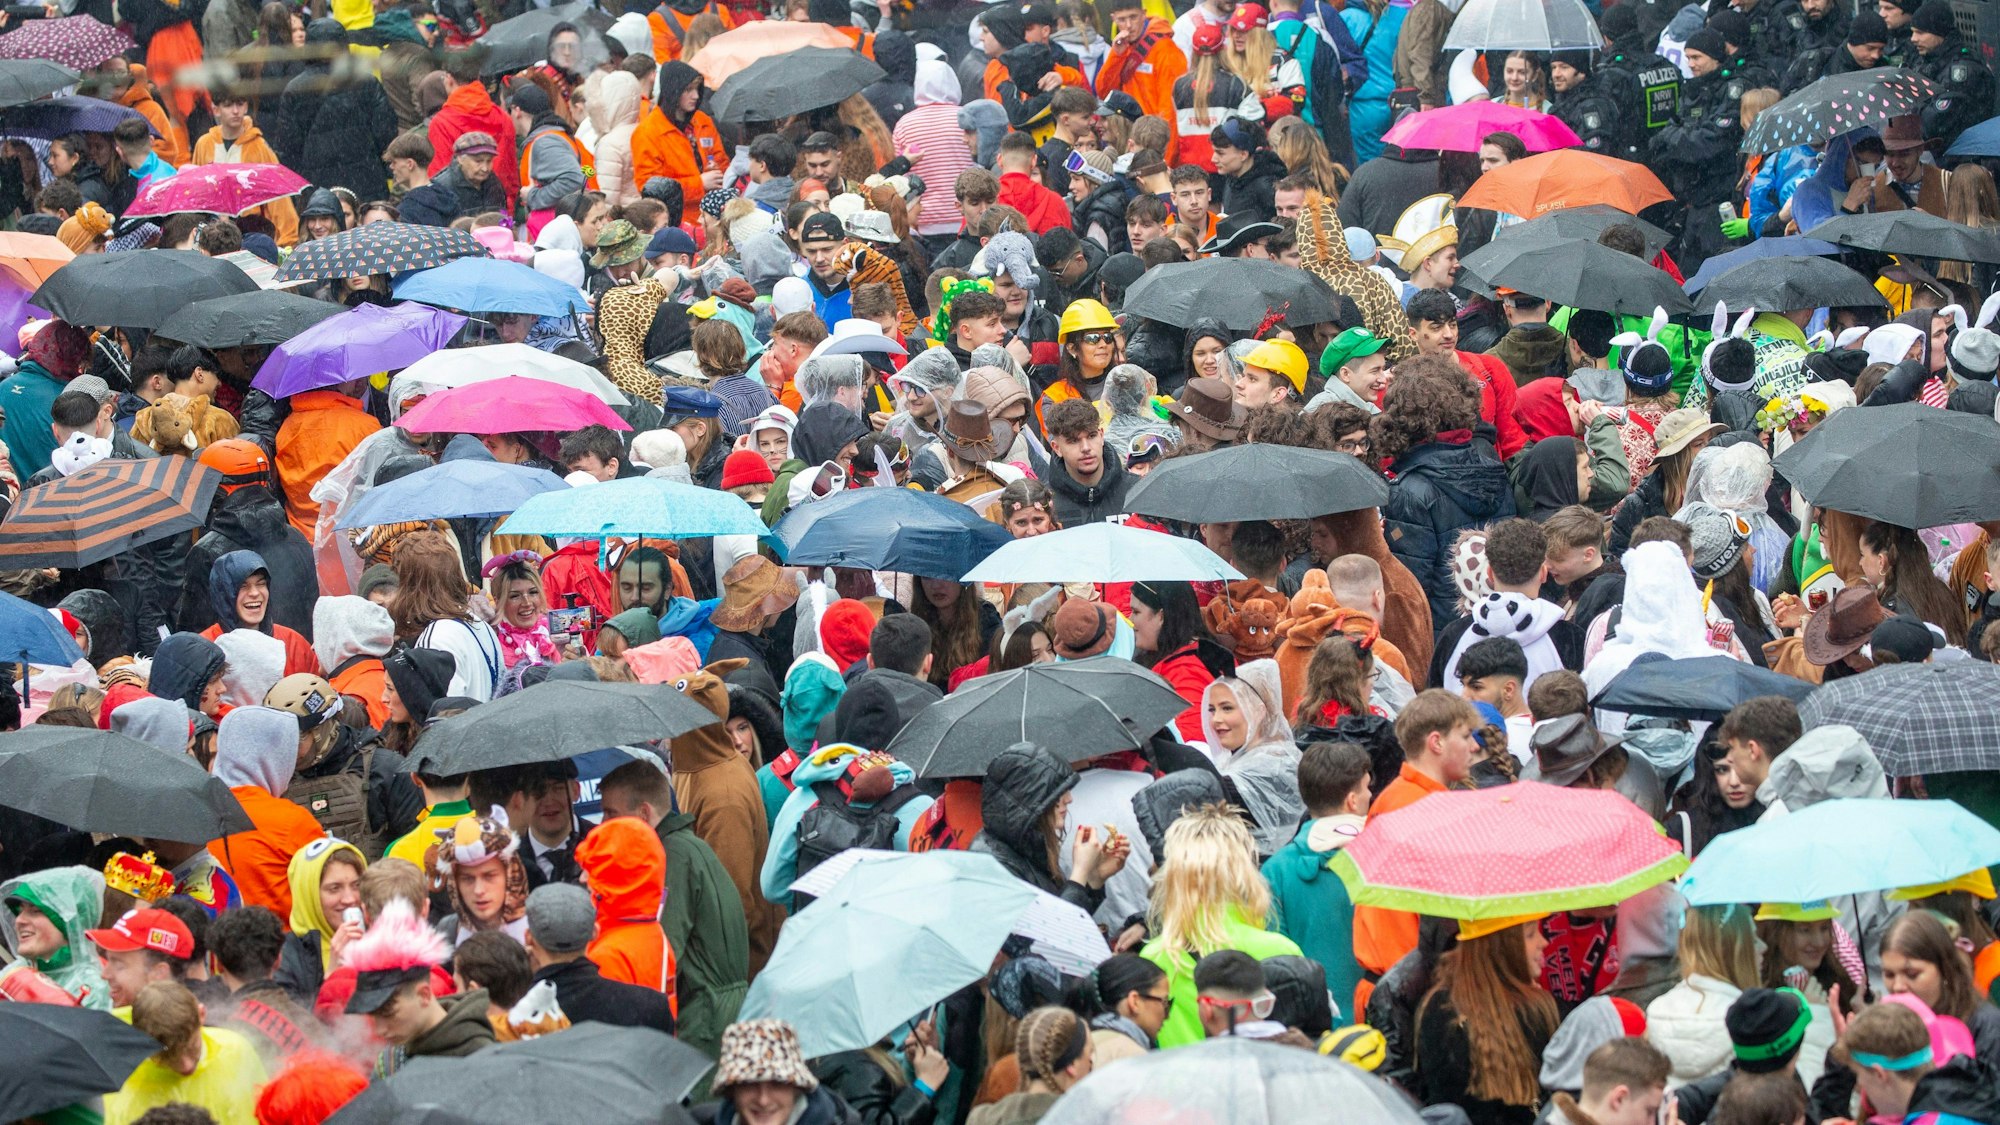 Gegen 11 Uhr wird der Regen wieder stärker. Die Leute drängen sich gemeinsam unter Regenschirme.